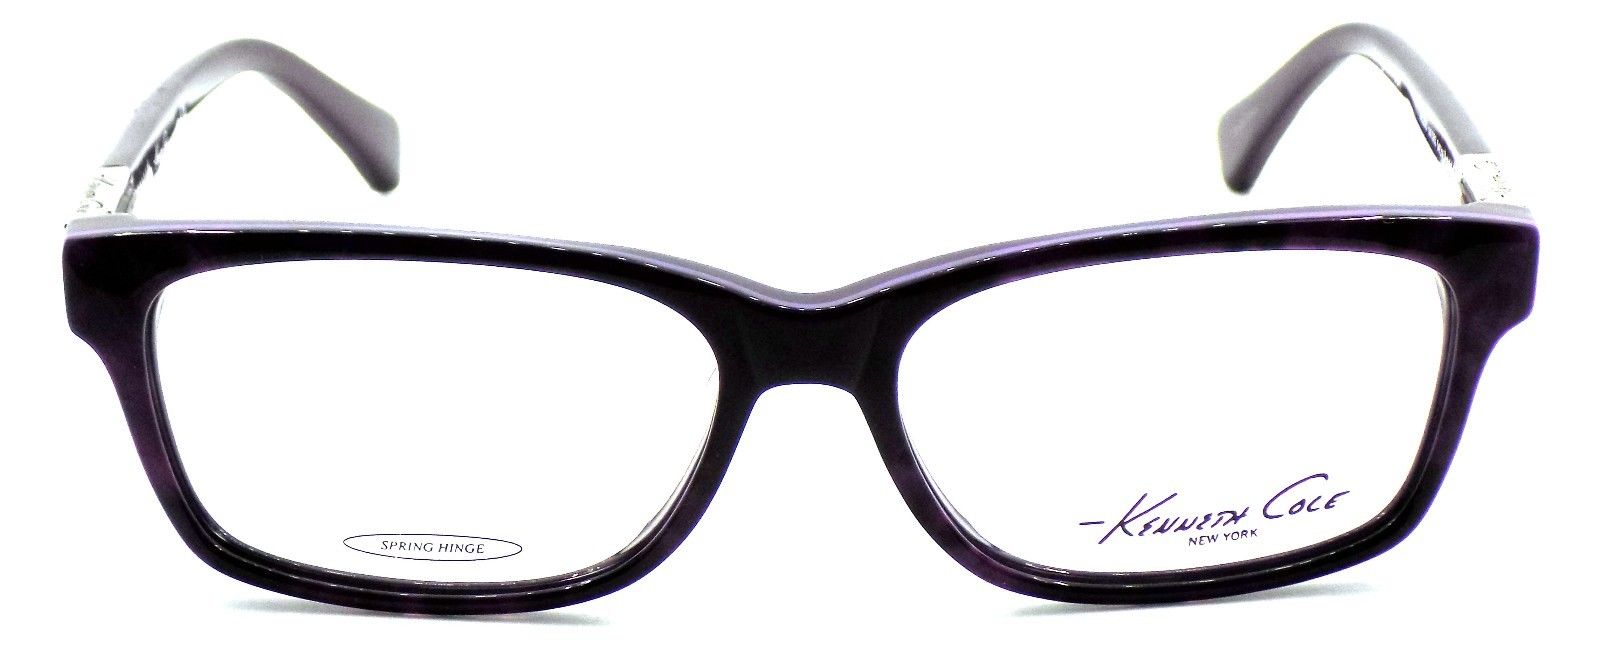 2-Kenneth Cole NY KC205 083 Women's Eyeglasses Frames 54-15-135 Violet + CASE-664689600120-IKSpecs